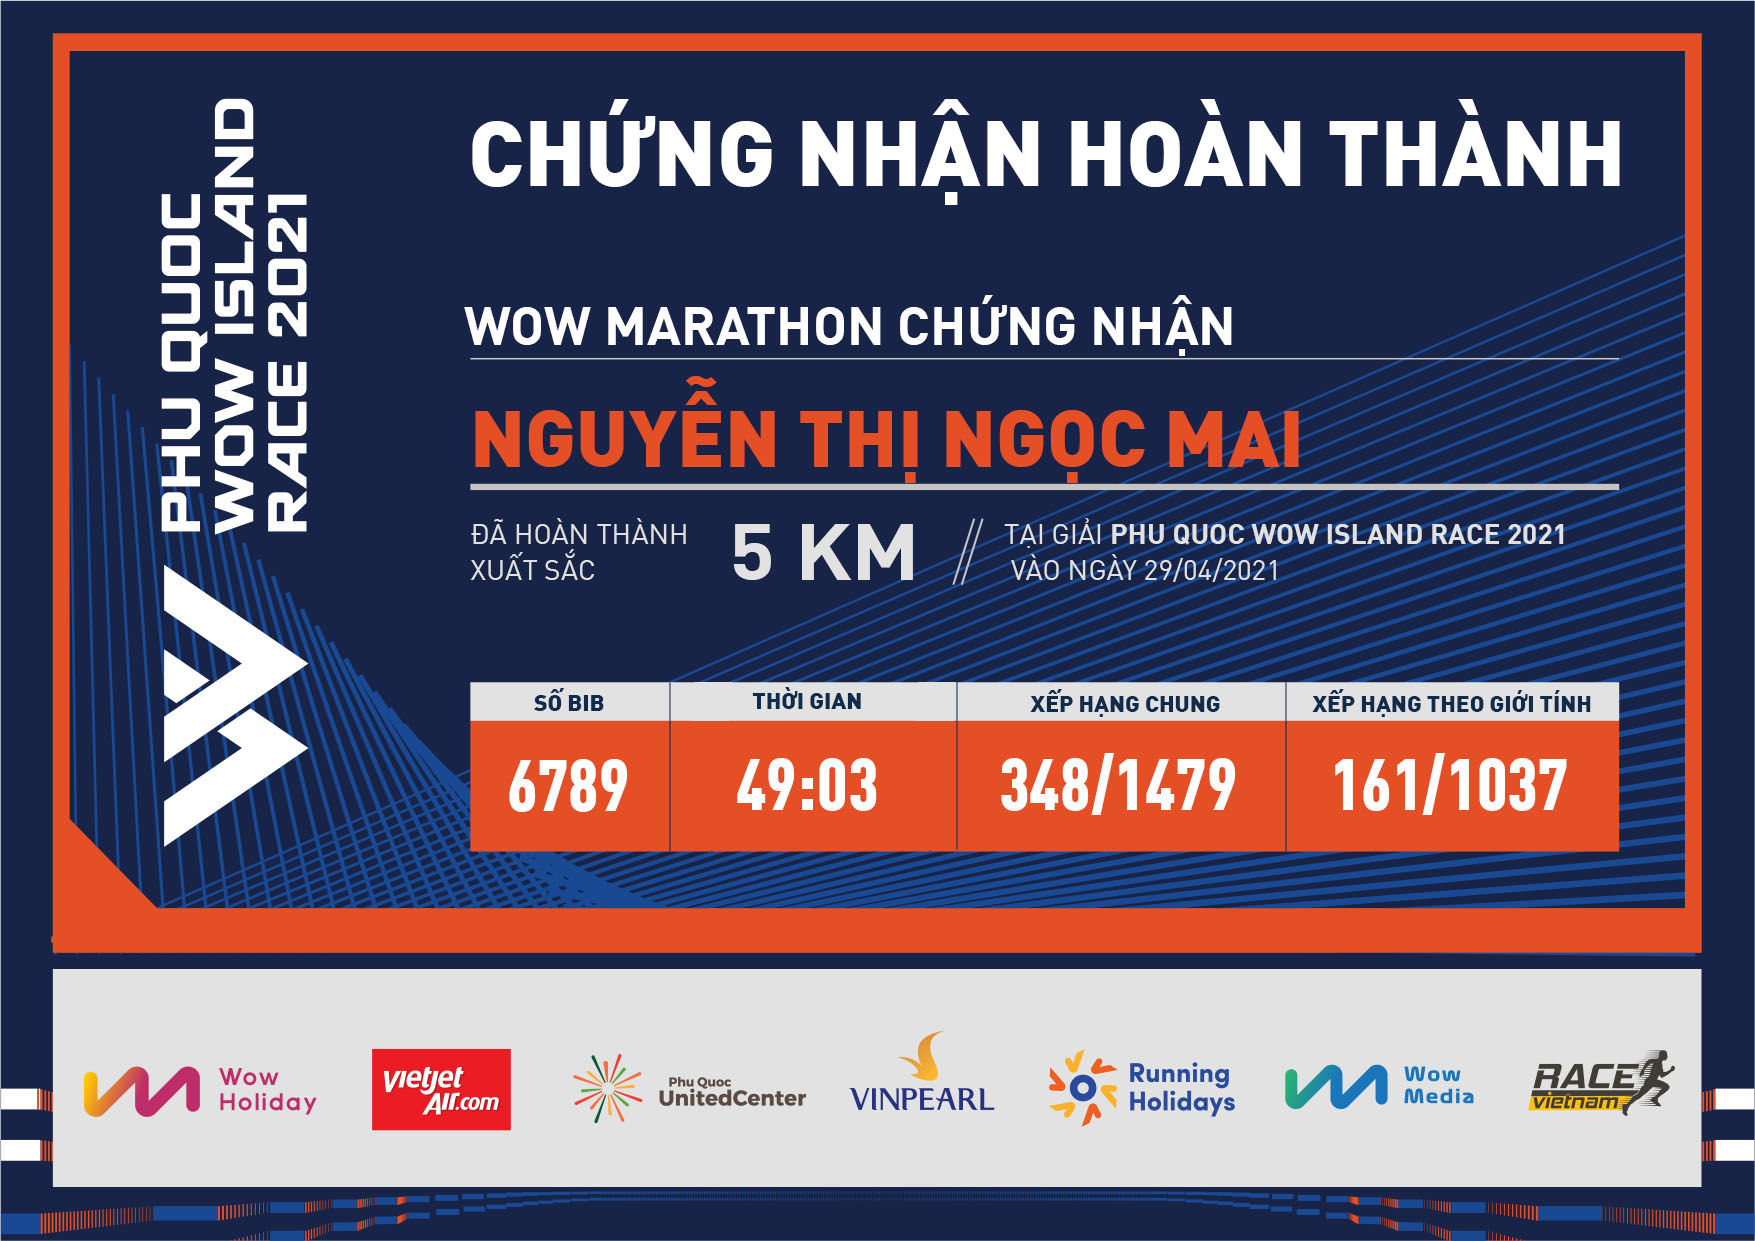 6789 - Nguyễn Thị Ngọc Mai